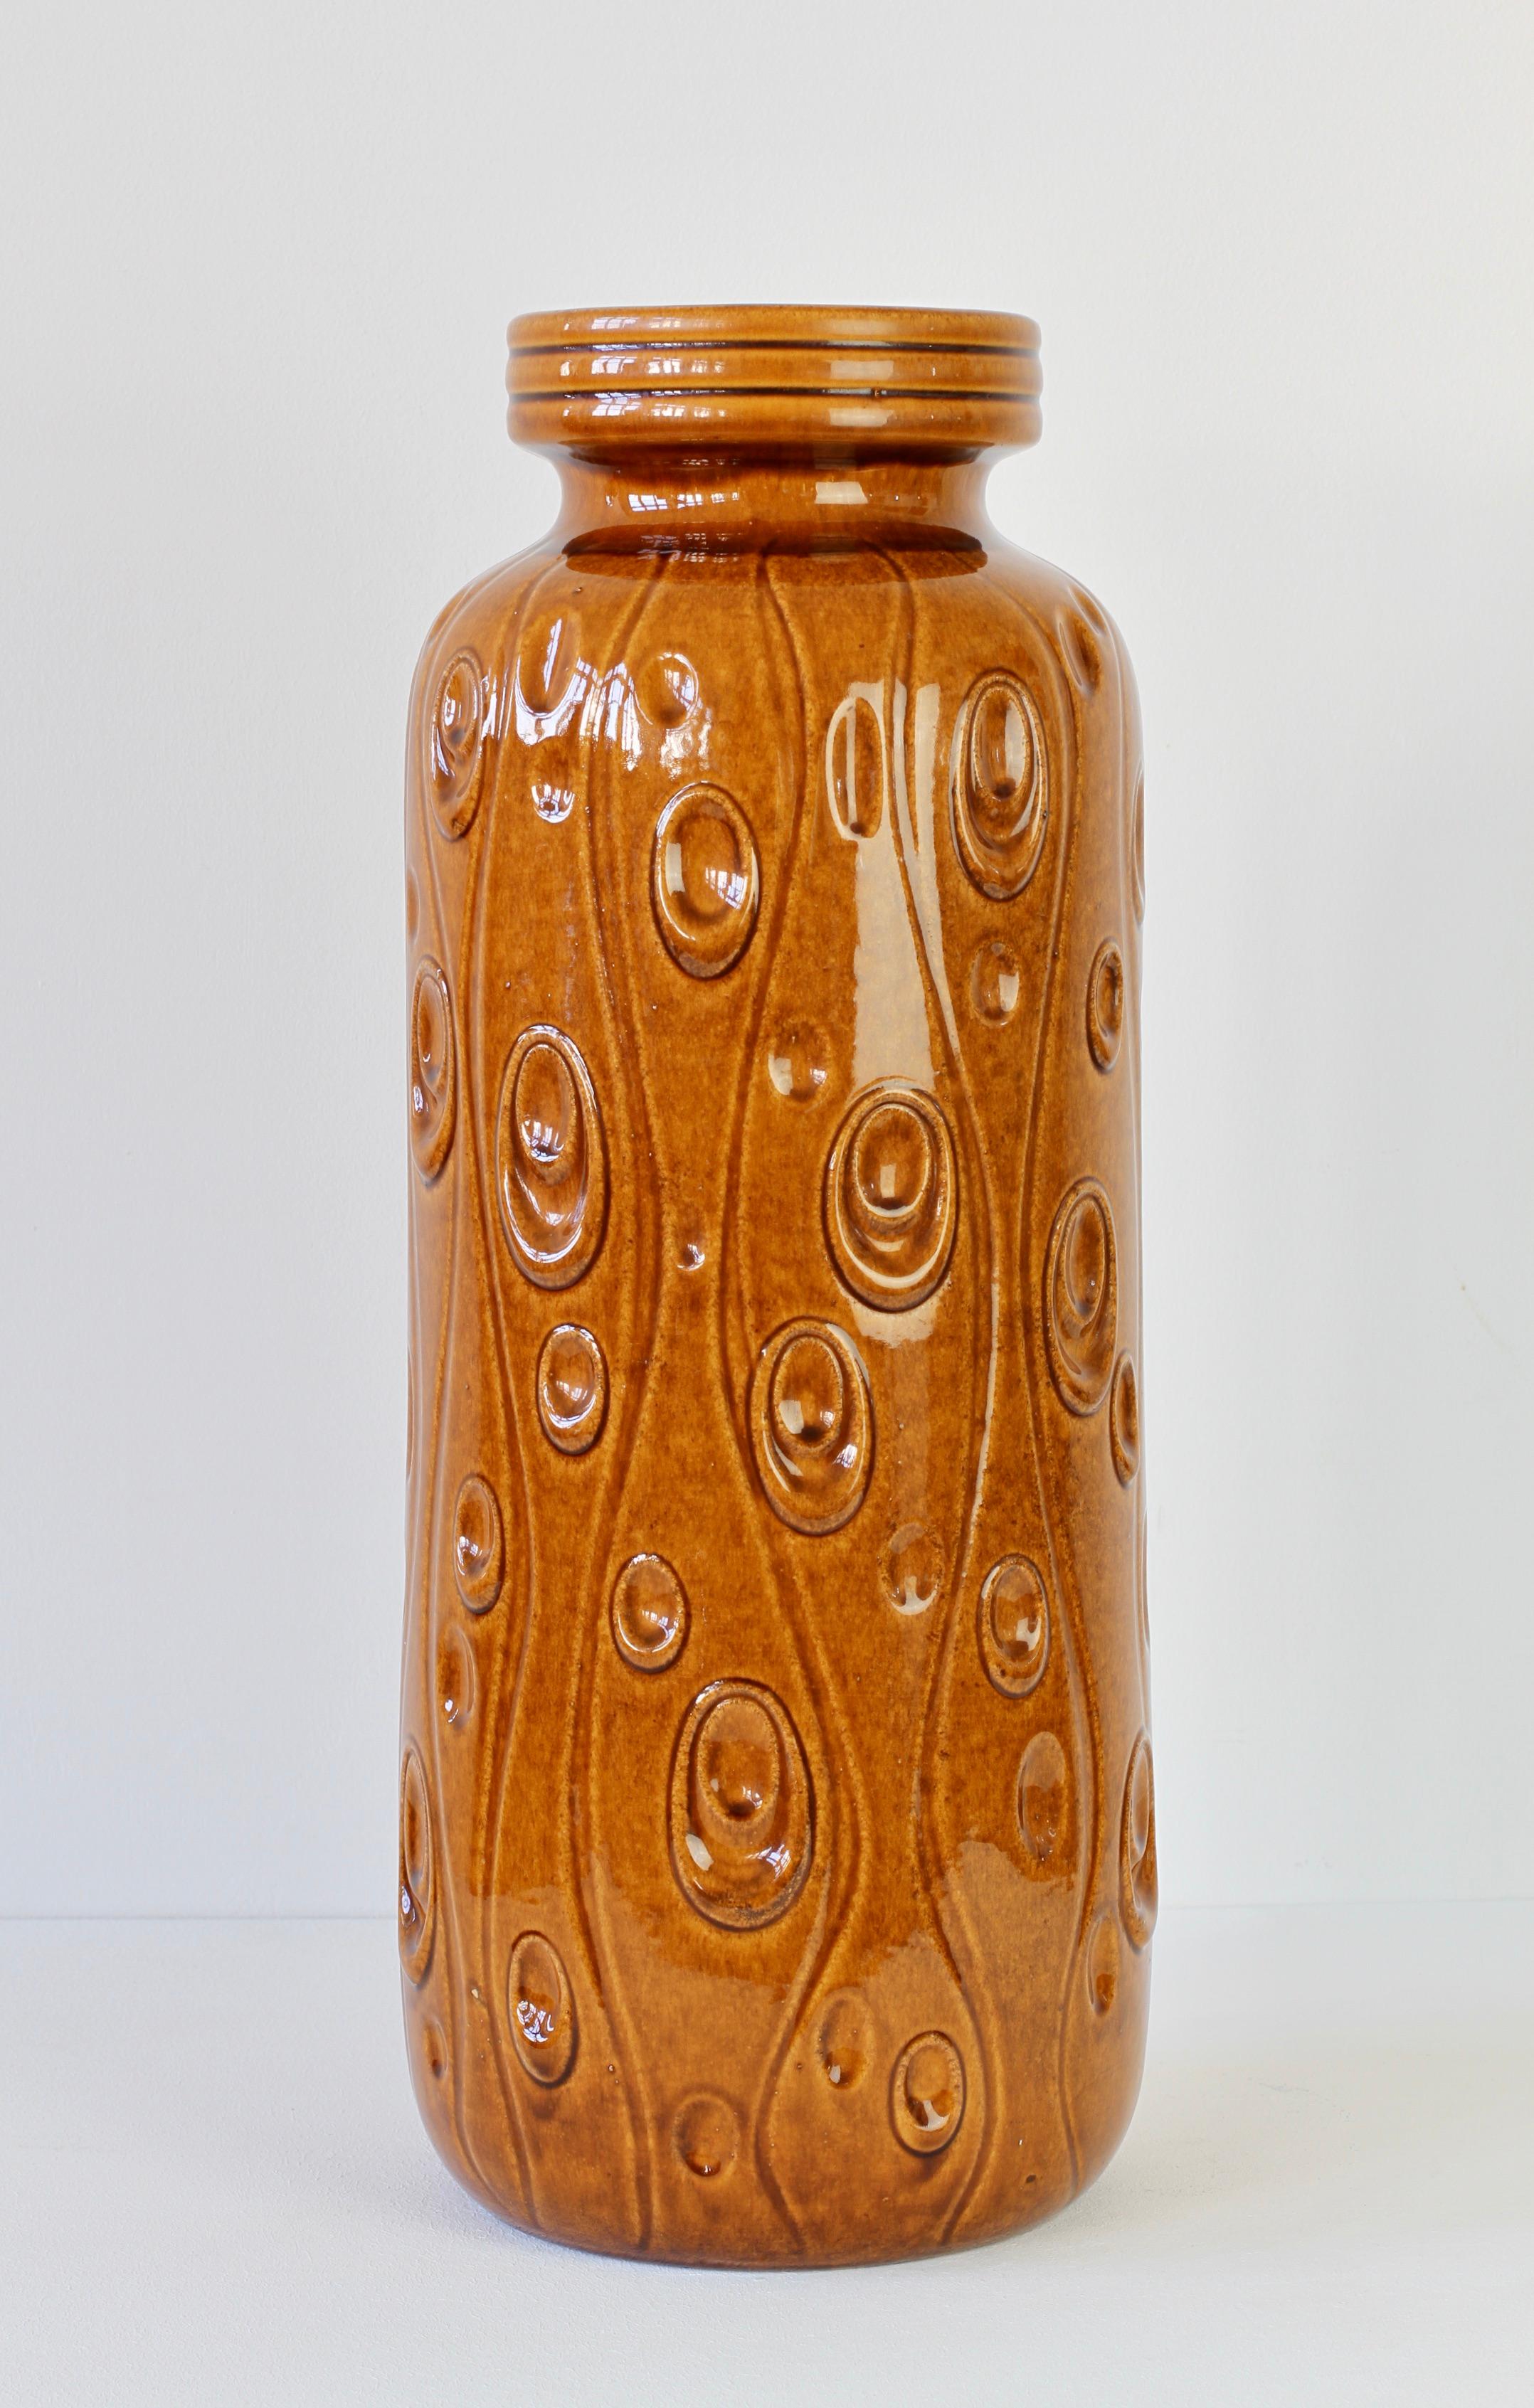 scheurich pottery vase